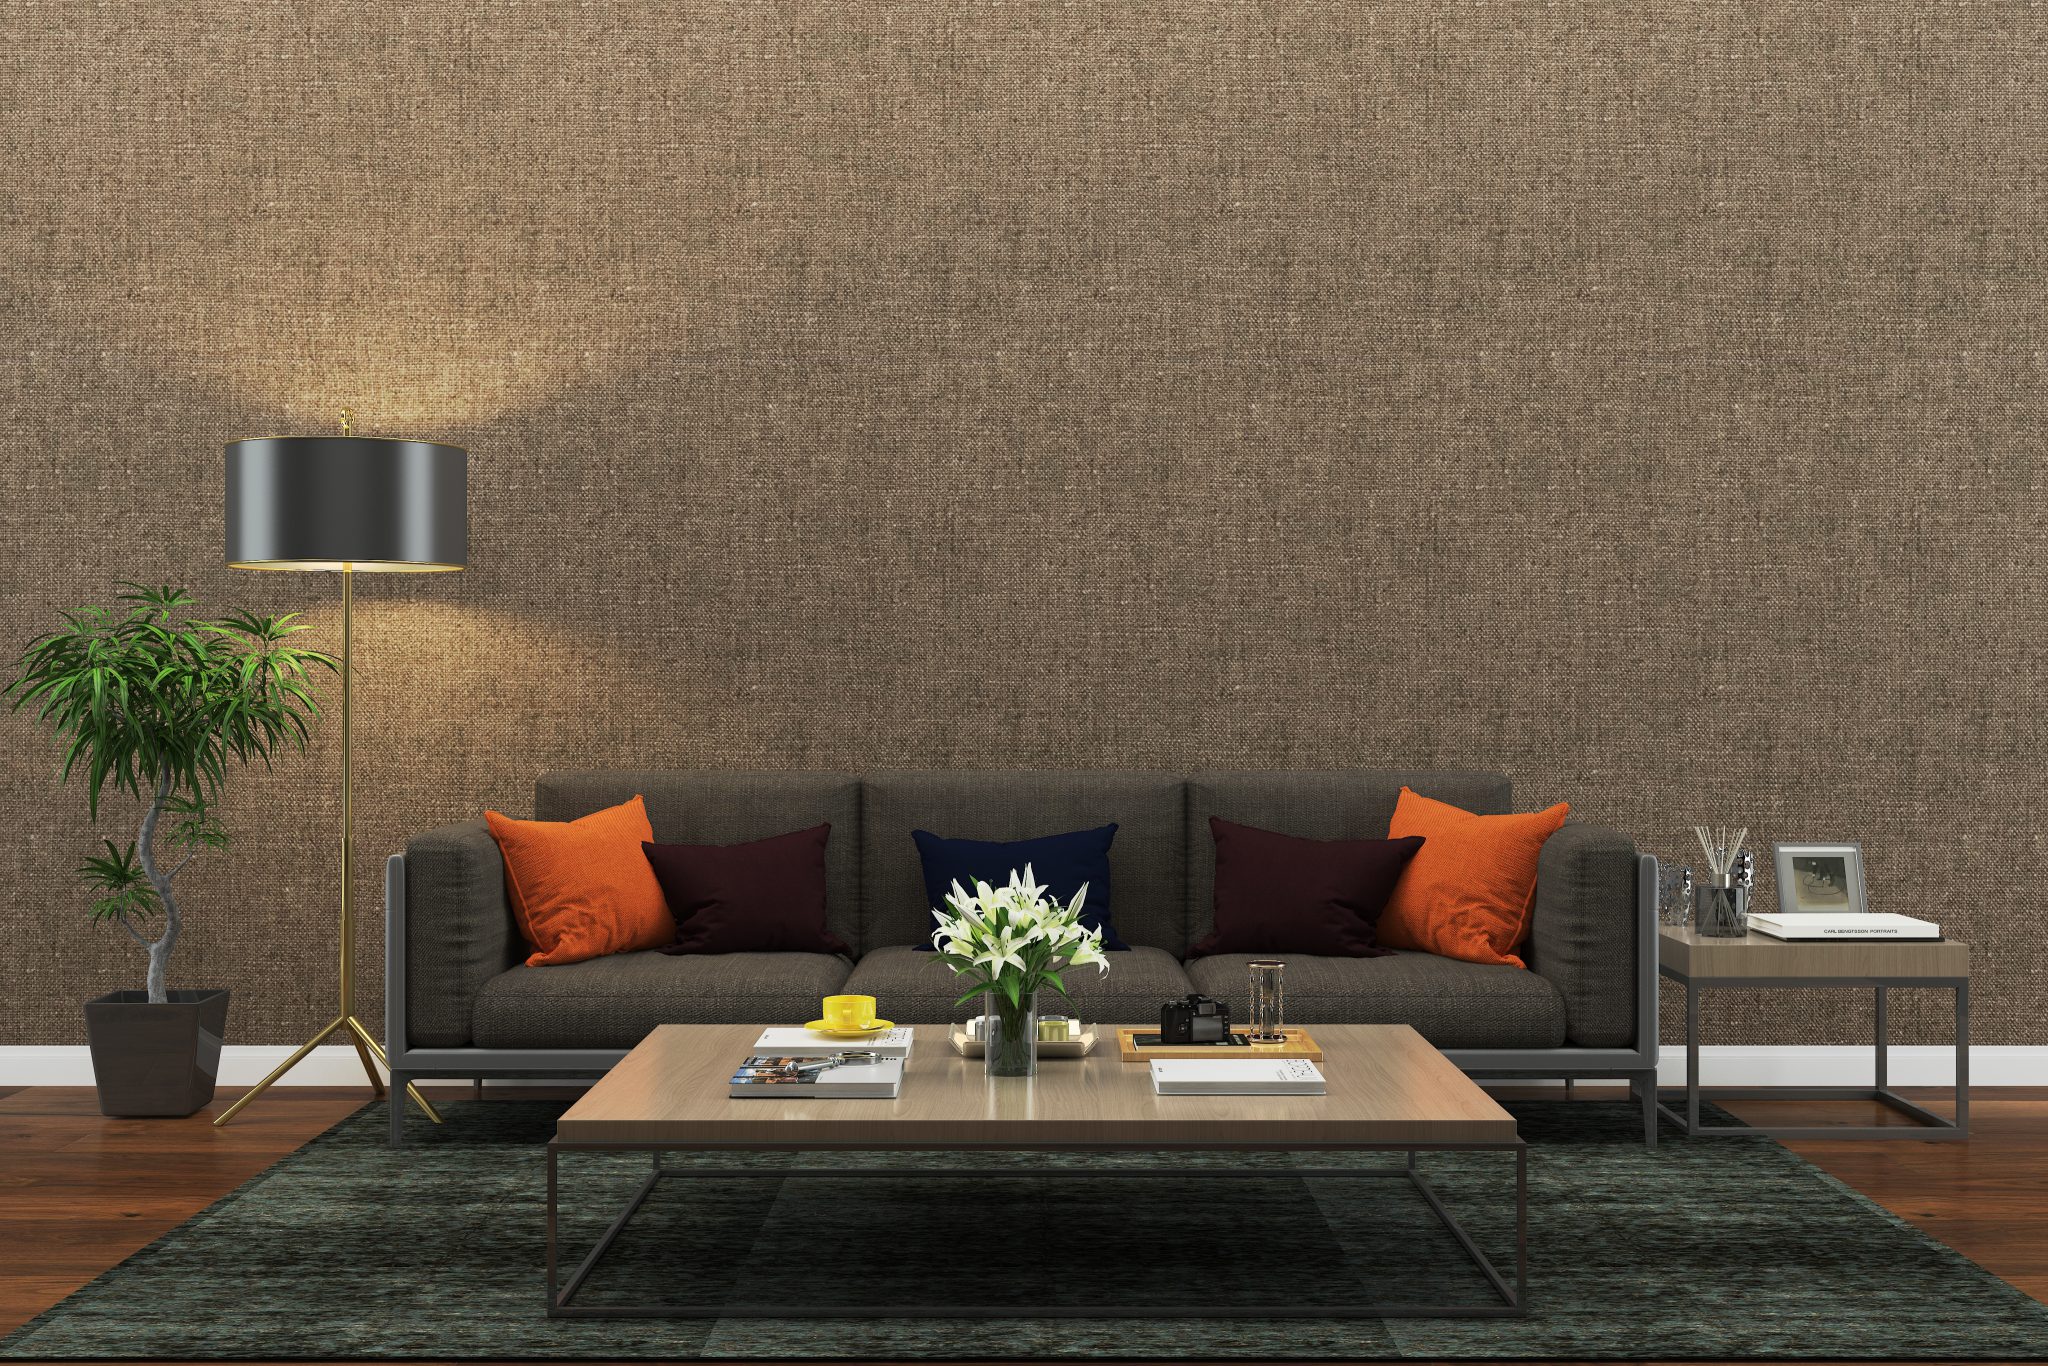 wallpaper living room ideas rustic